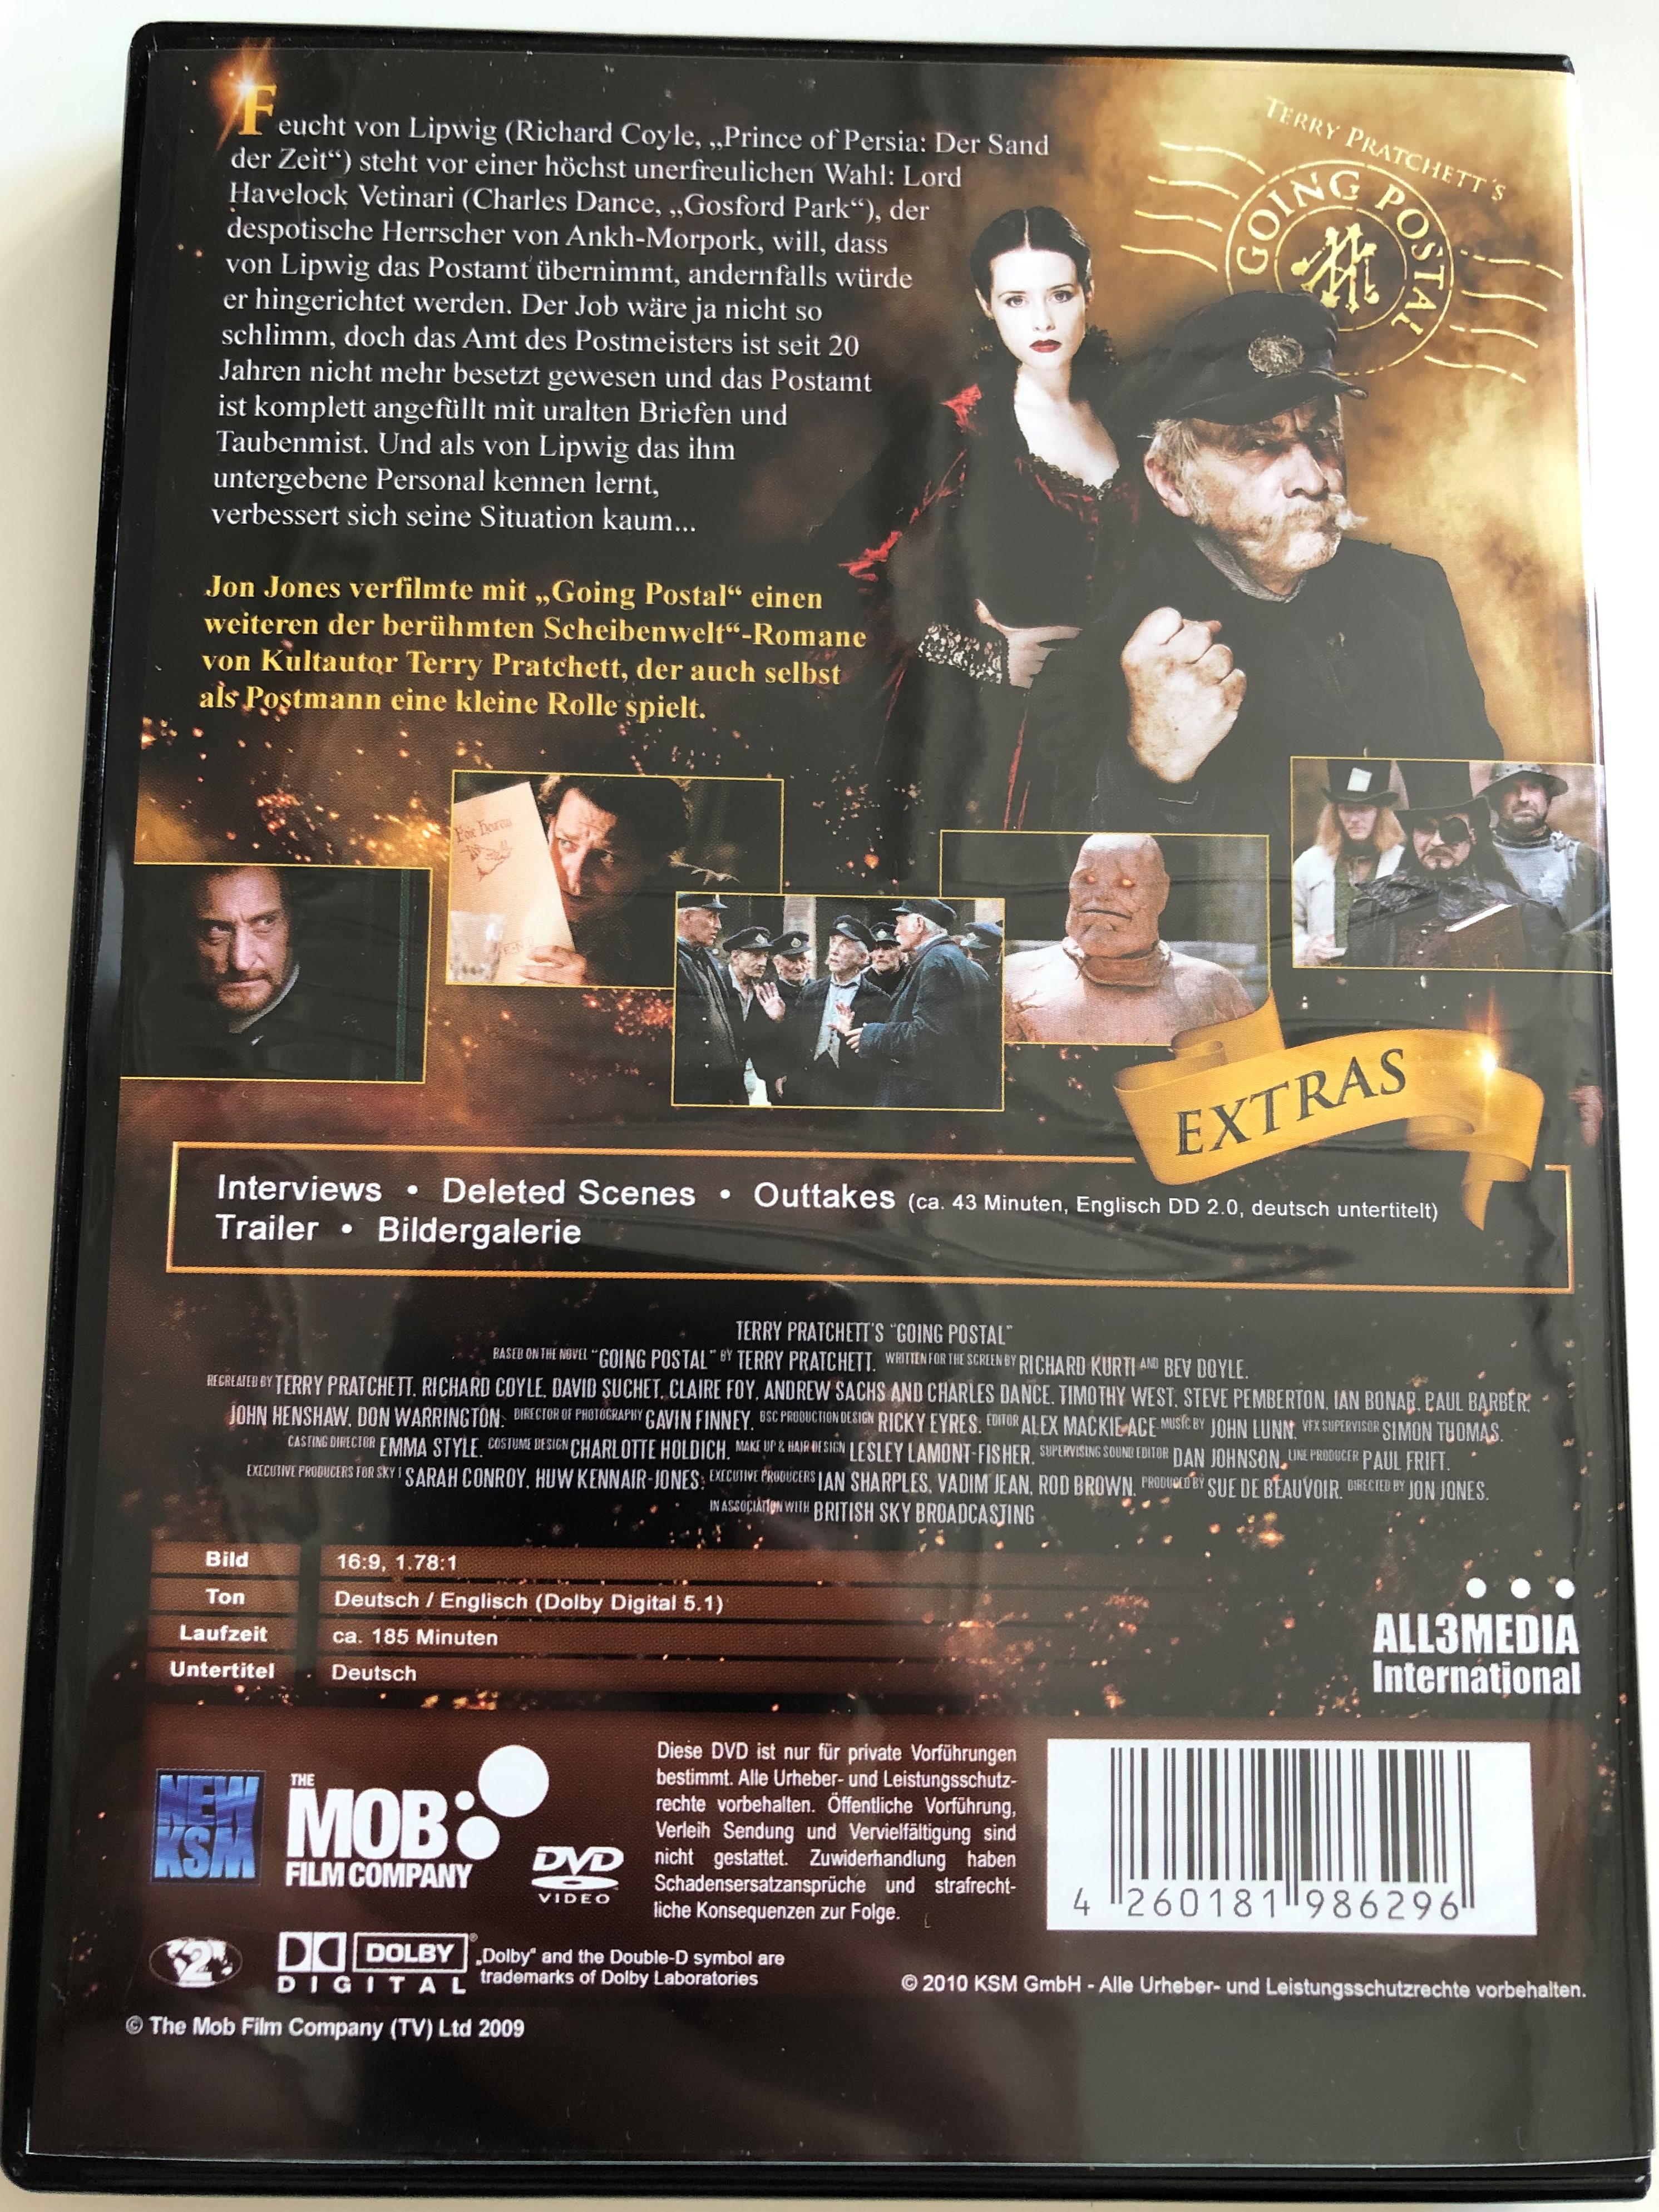 terry-pratchett-s-going-postal-dvd-2010-nach-dem-scheibenwelt-roman-2-disc-set-eine-geschichte-ber-liebe-und-rache-3-.jpg